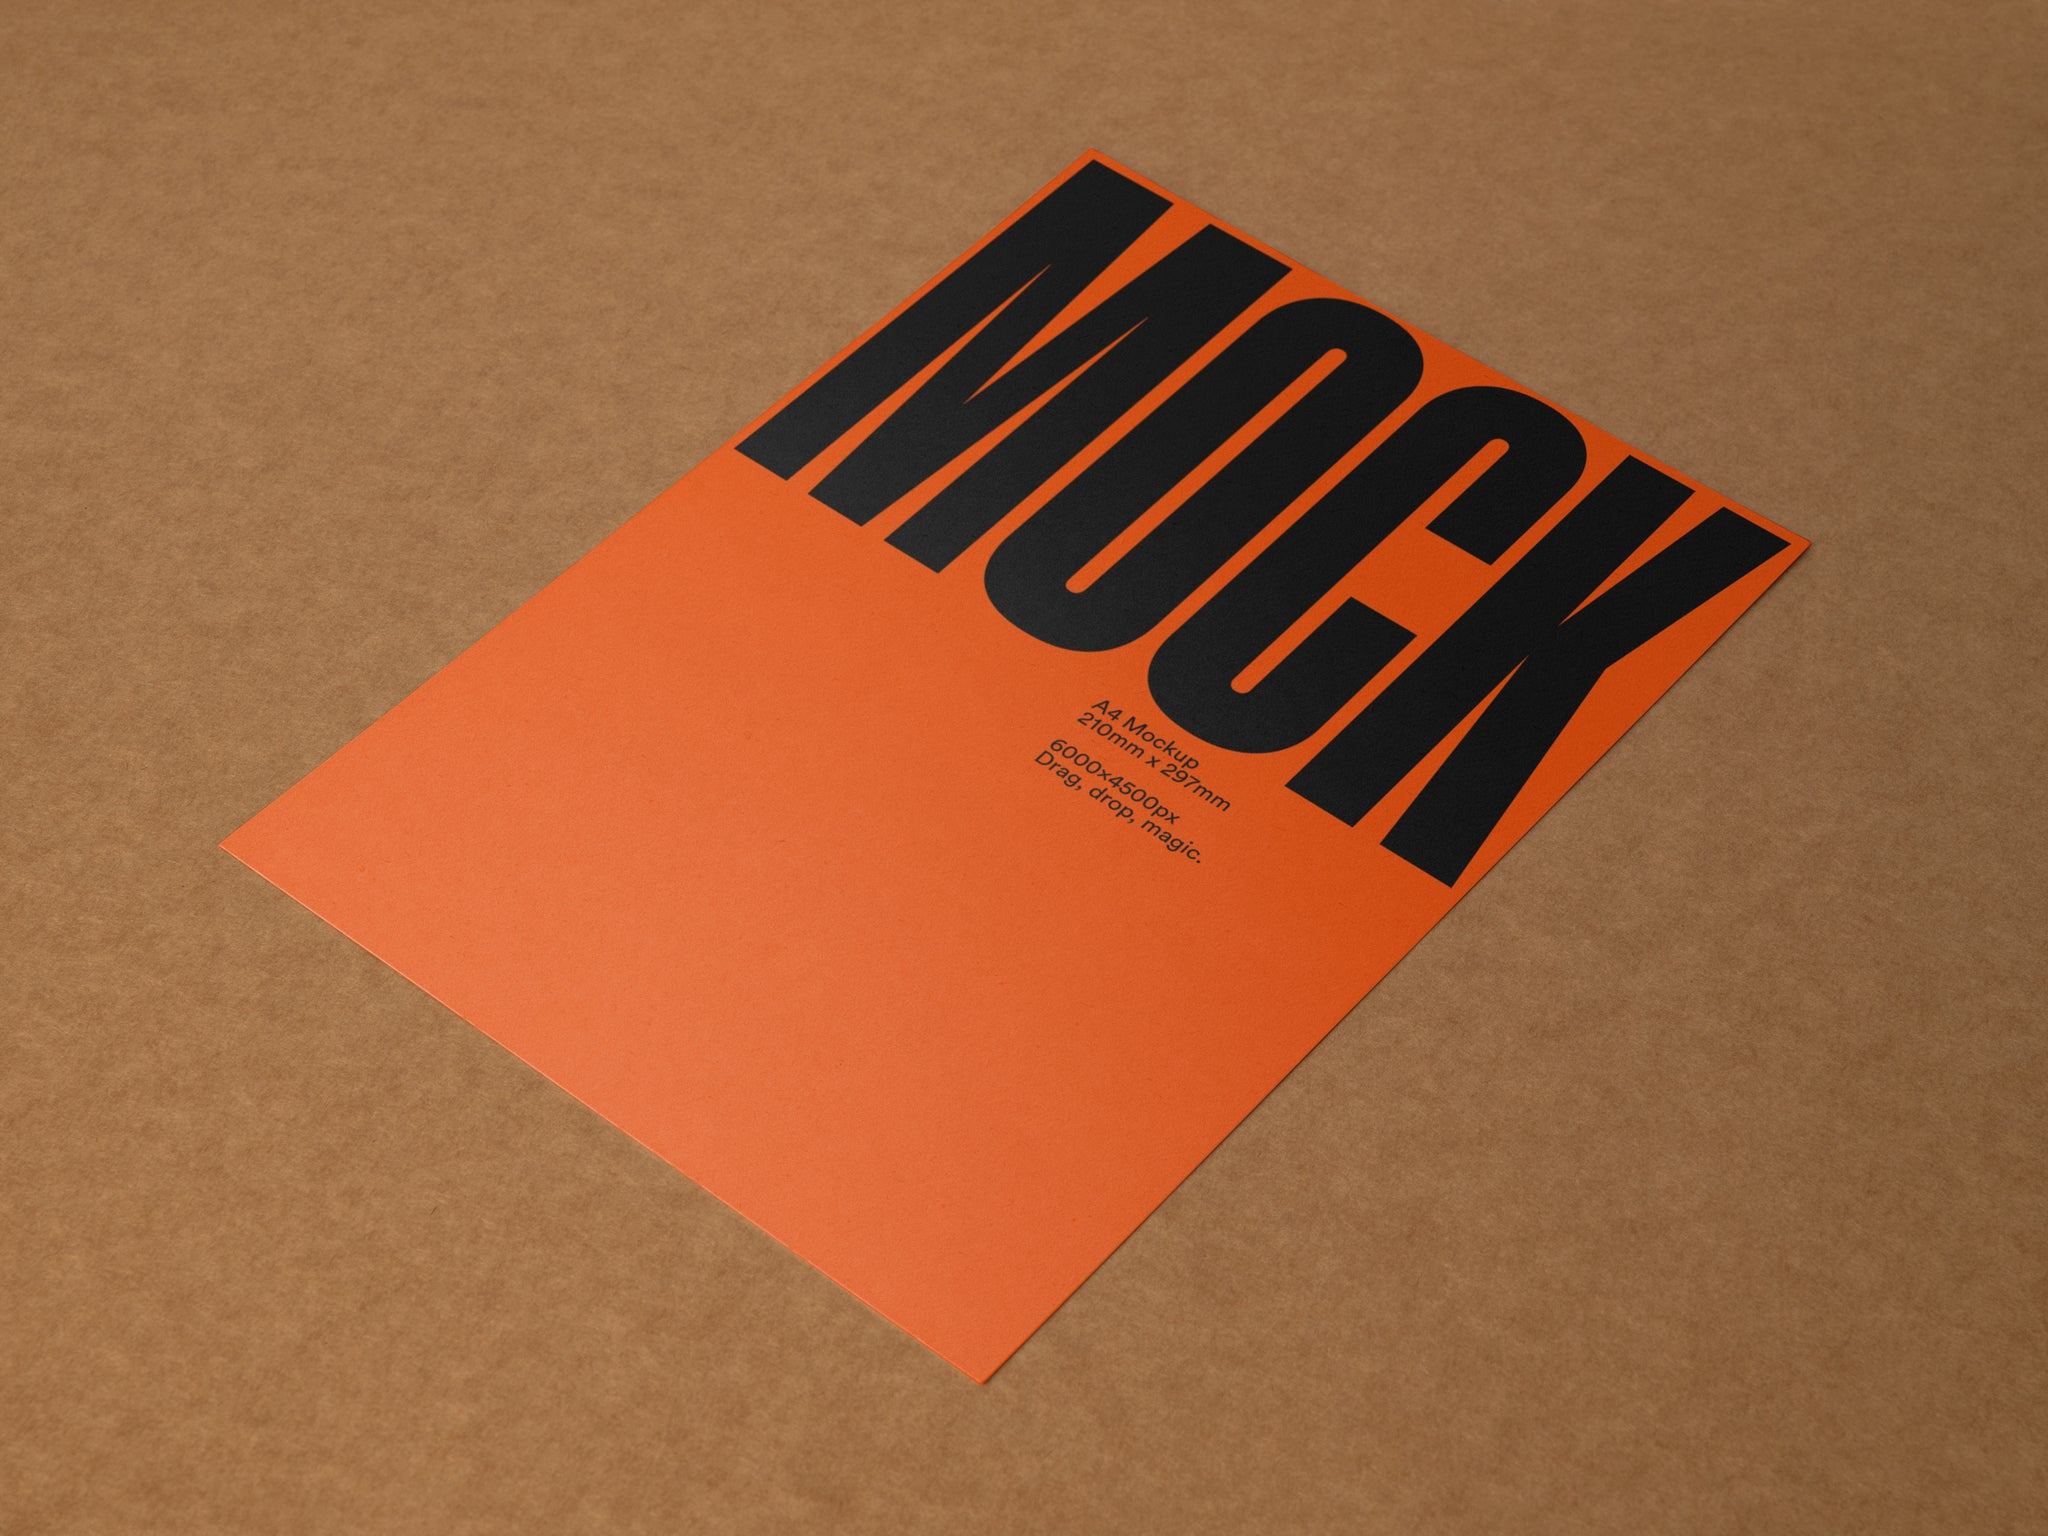 Poster Mockup / A4 Letterhead Mockup Angle